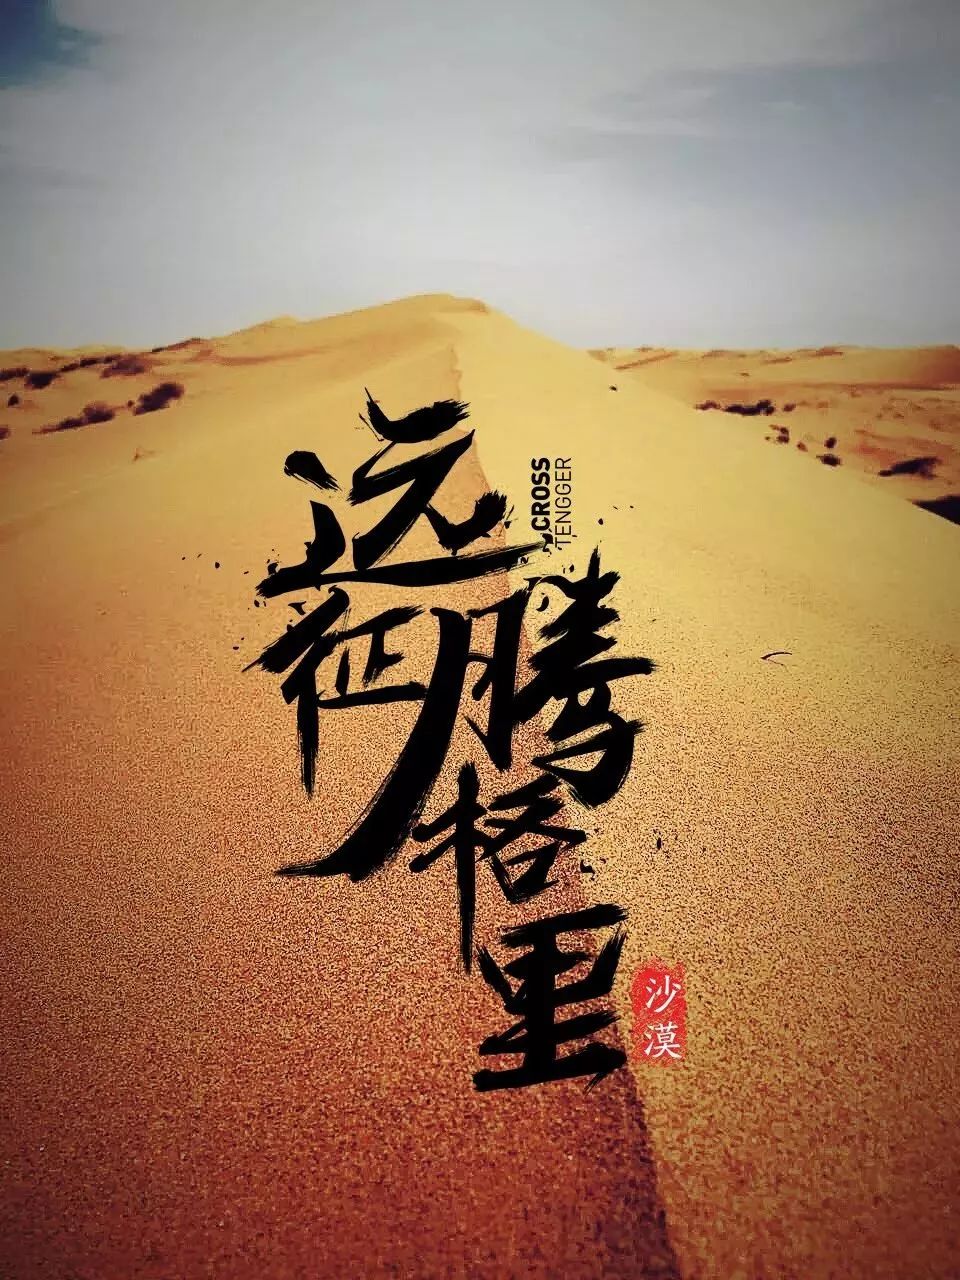 腾格里沙漠 tengger desert中国第四大沙漠 国家地质公园,南越长城,东